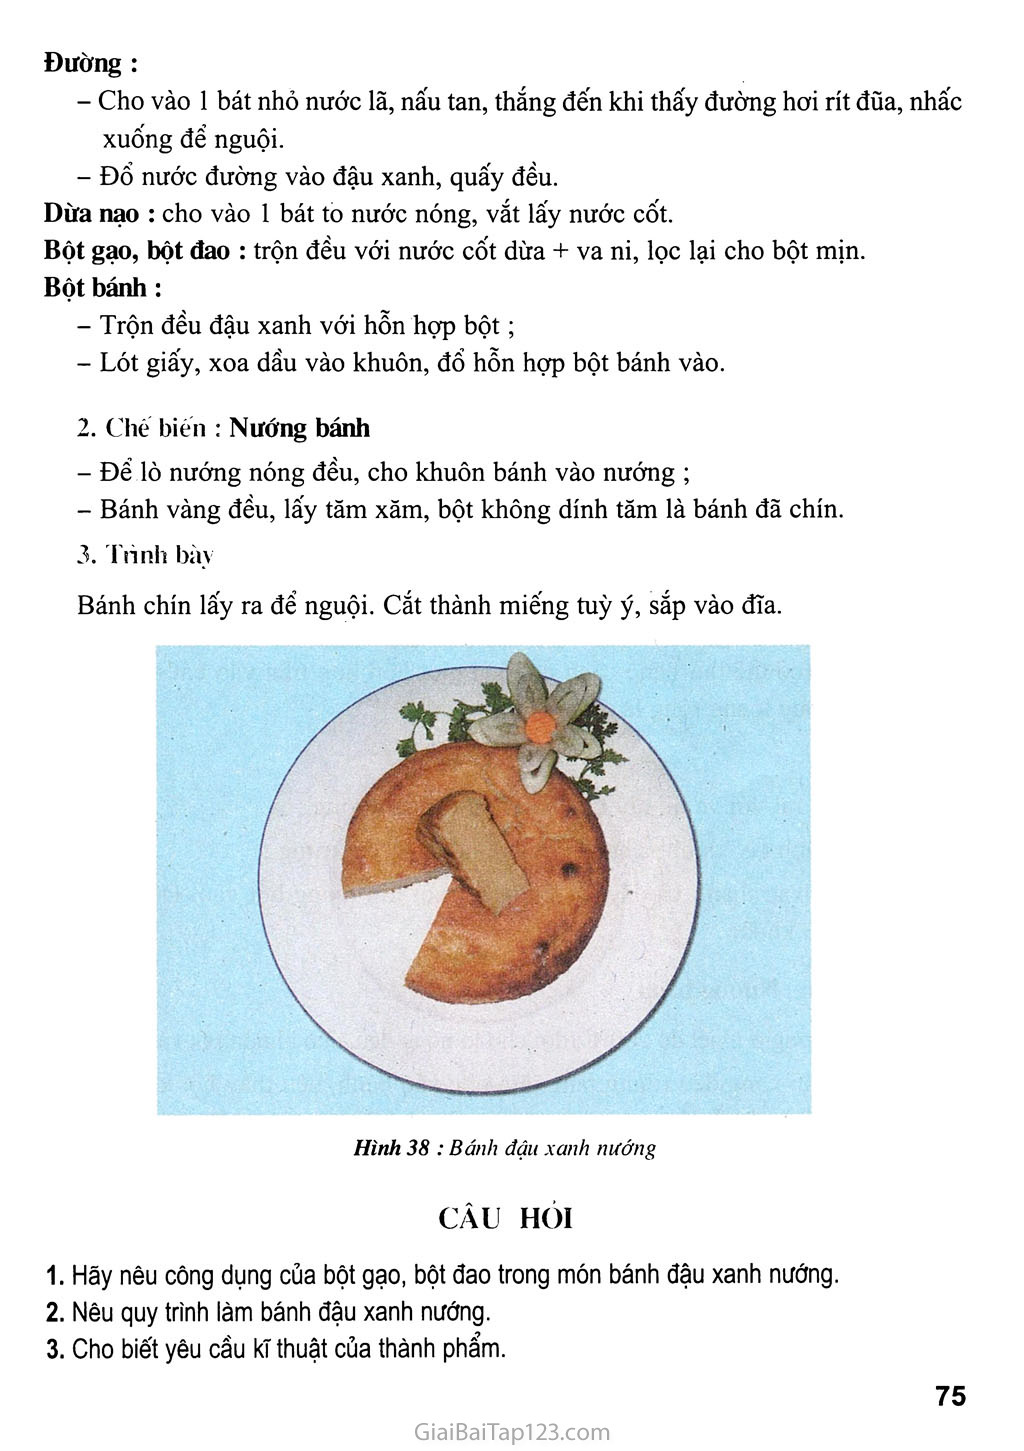 Bánh đậu xanh nướng trang 2